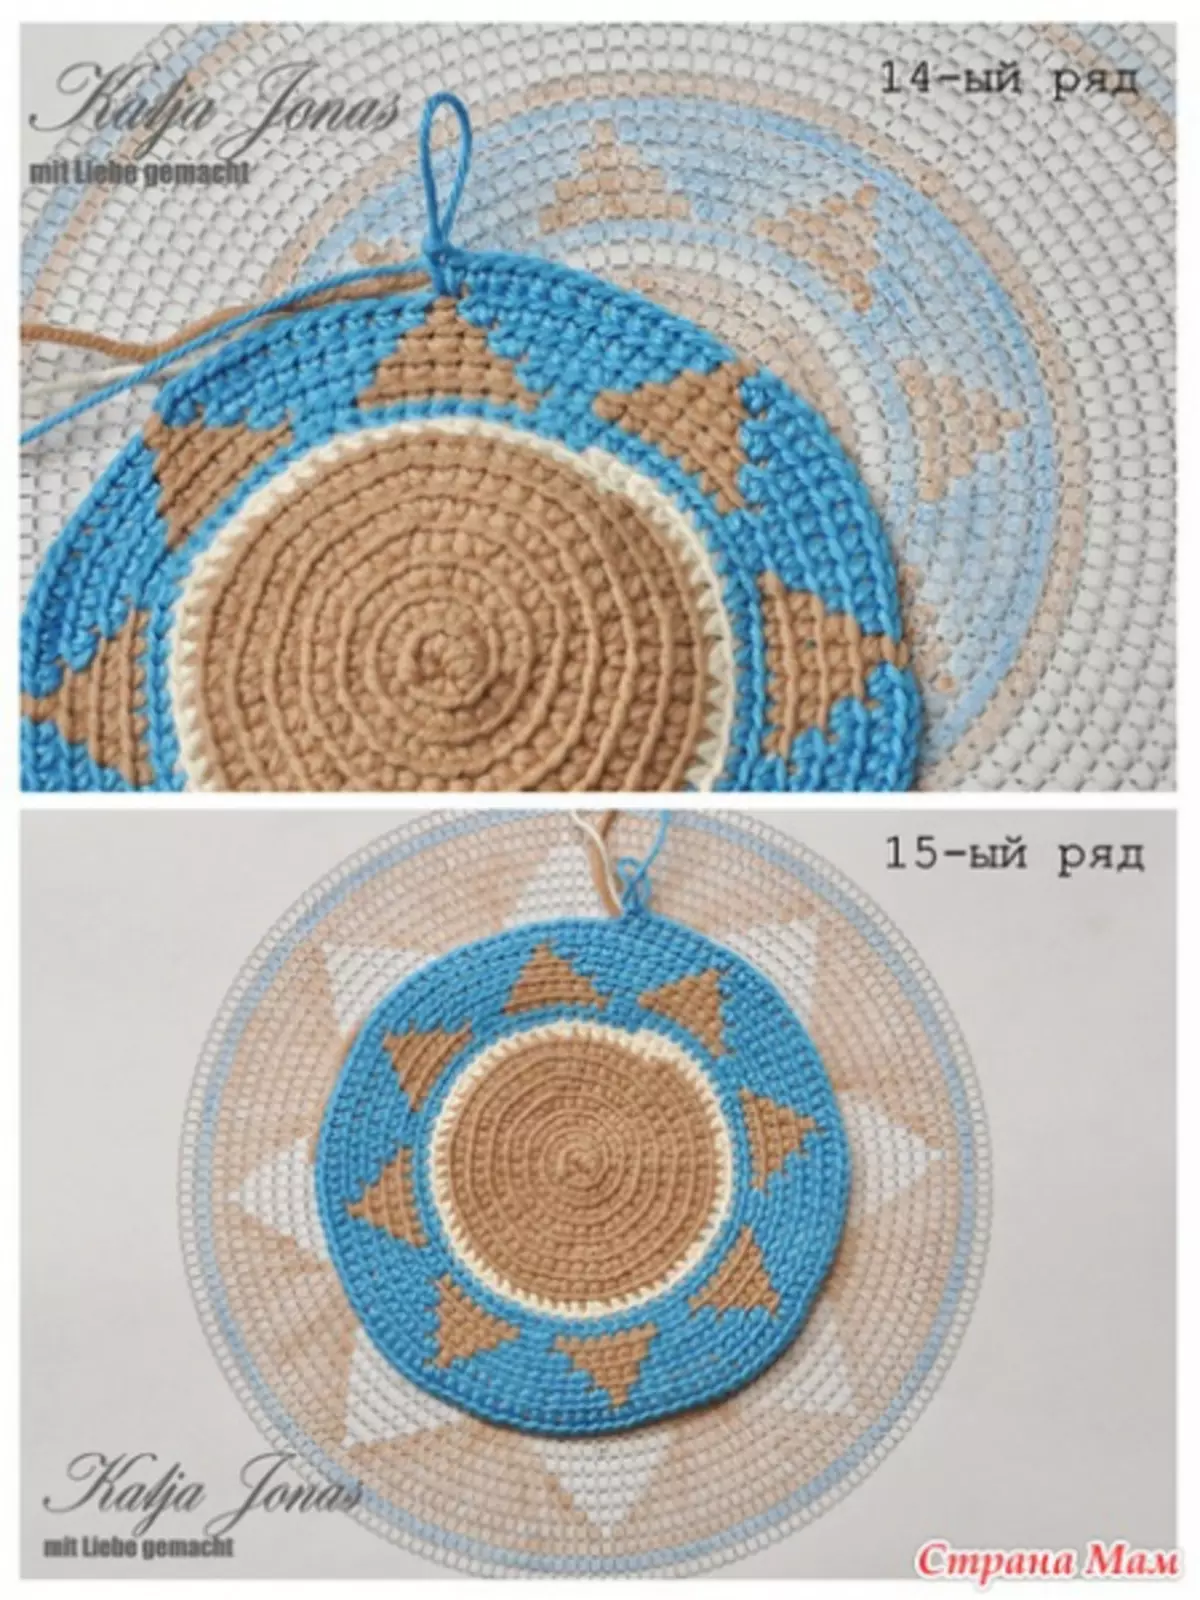 哥伦比亚泌尿：顶级艺术钩针编织方案